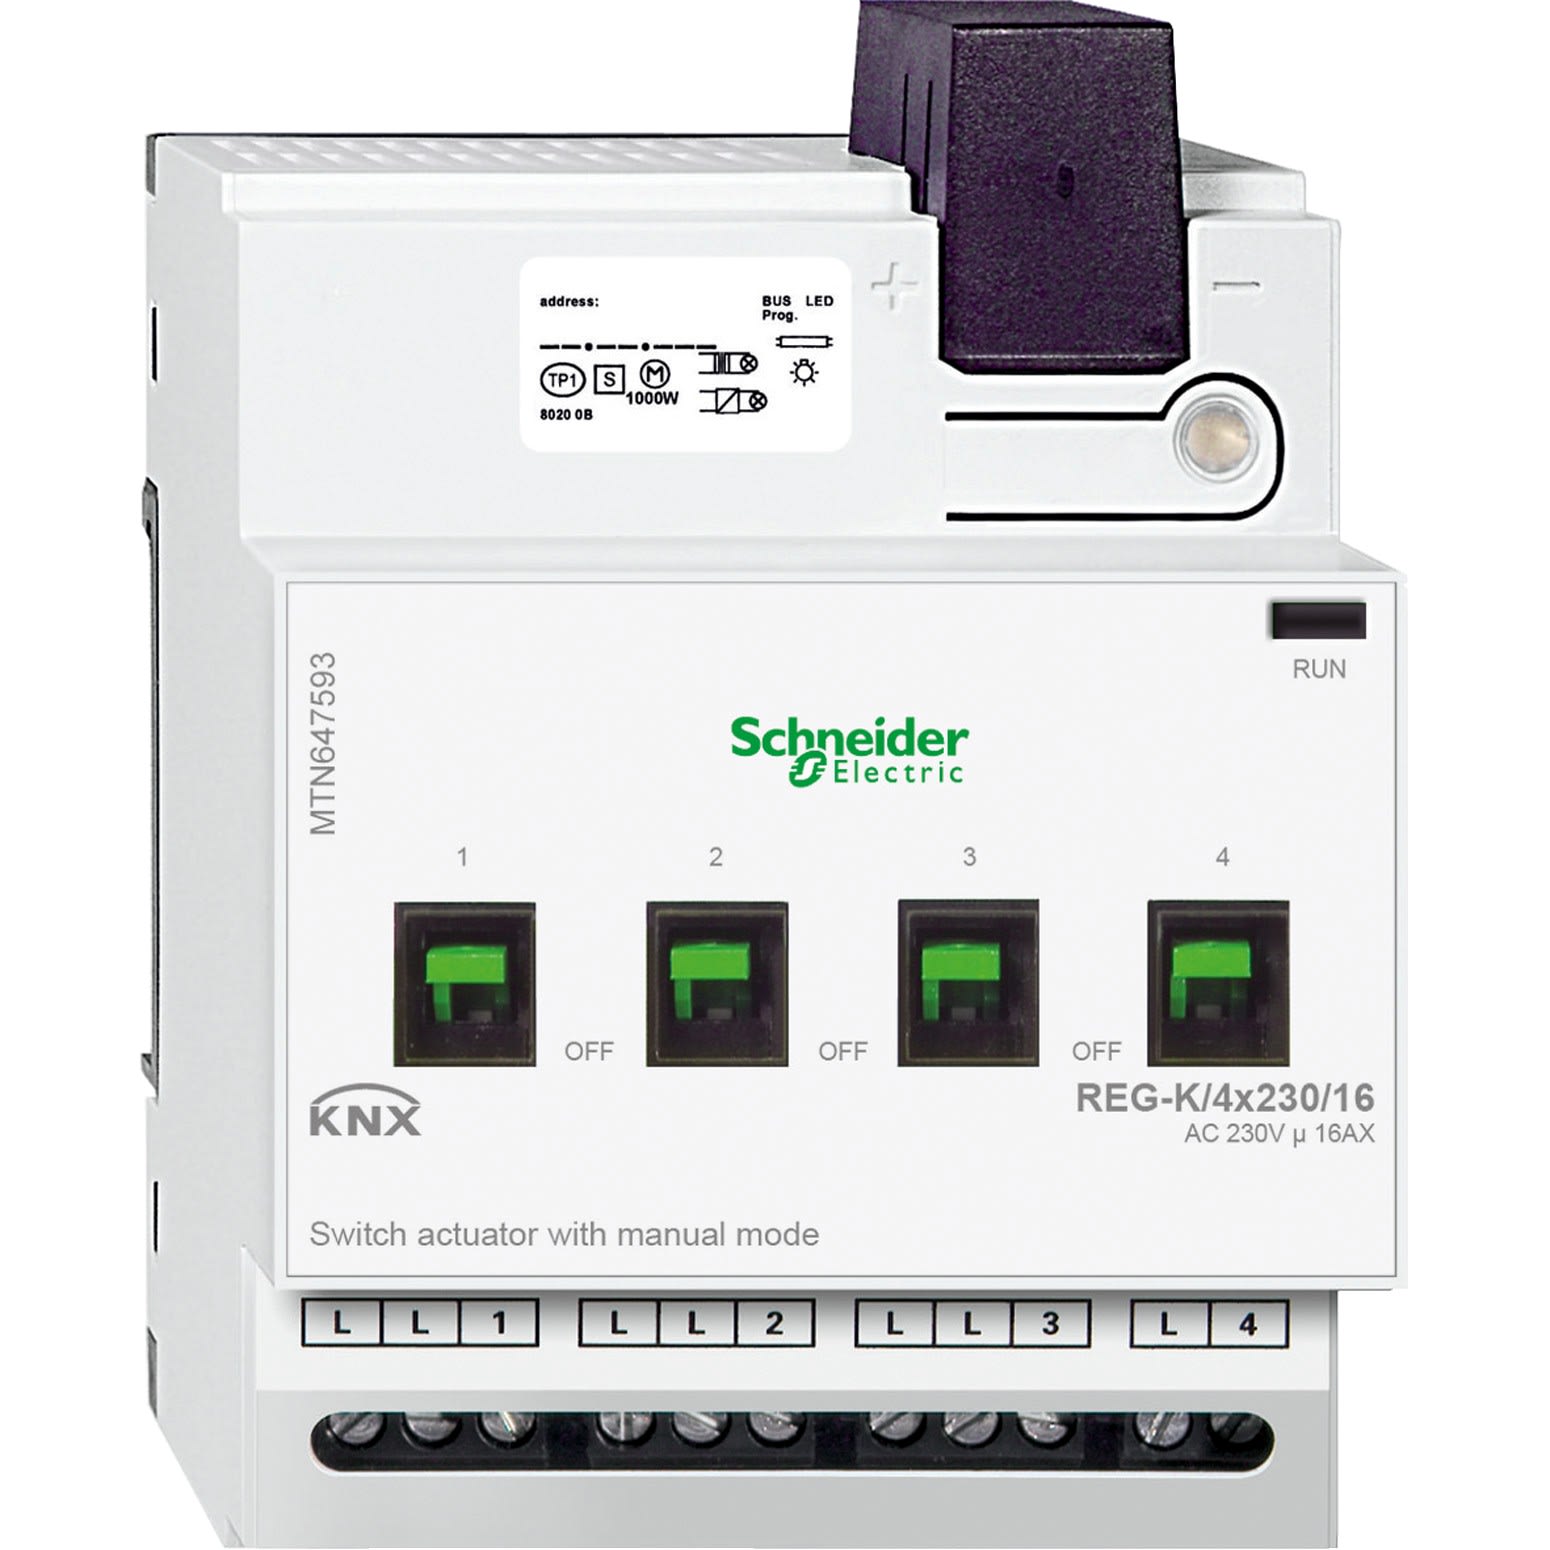 Schneider Electric - KNX - actionneur de commutation - 4x230V - 16A - a commande manuelle